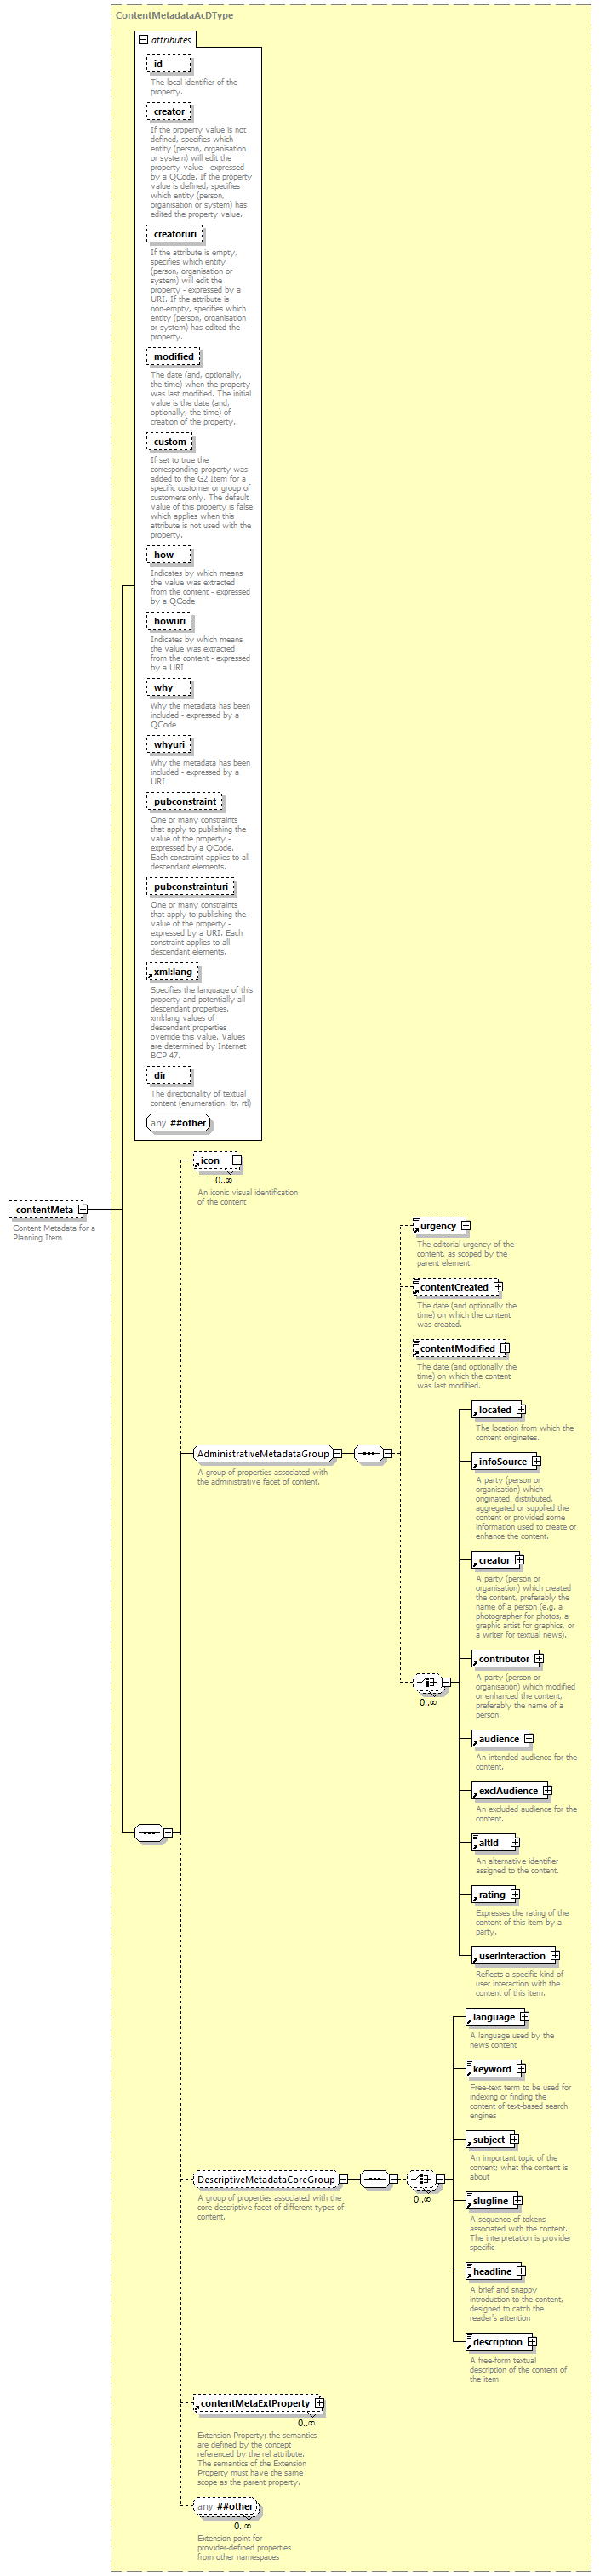 PlanningItem_diagrams/PlanningItem_p3.png